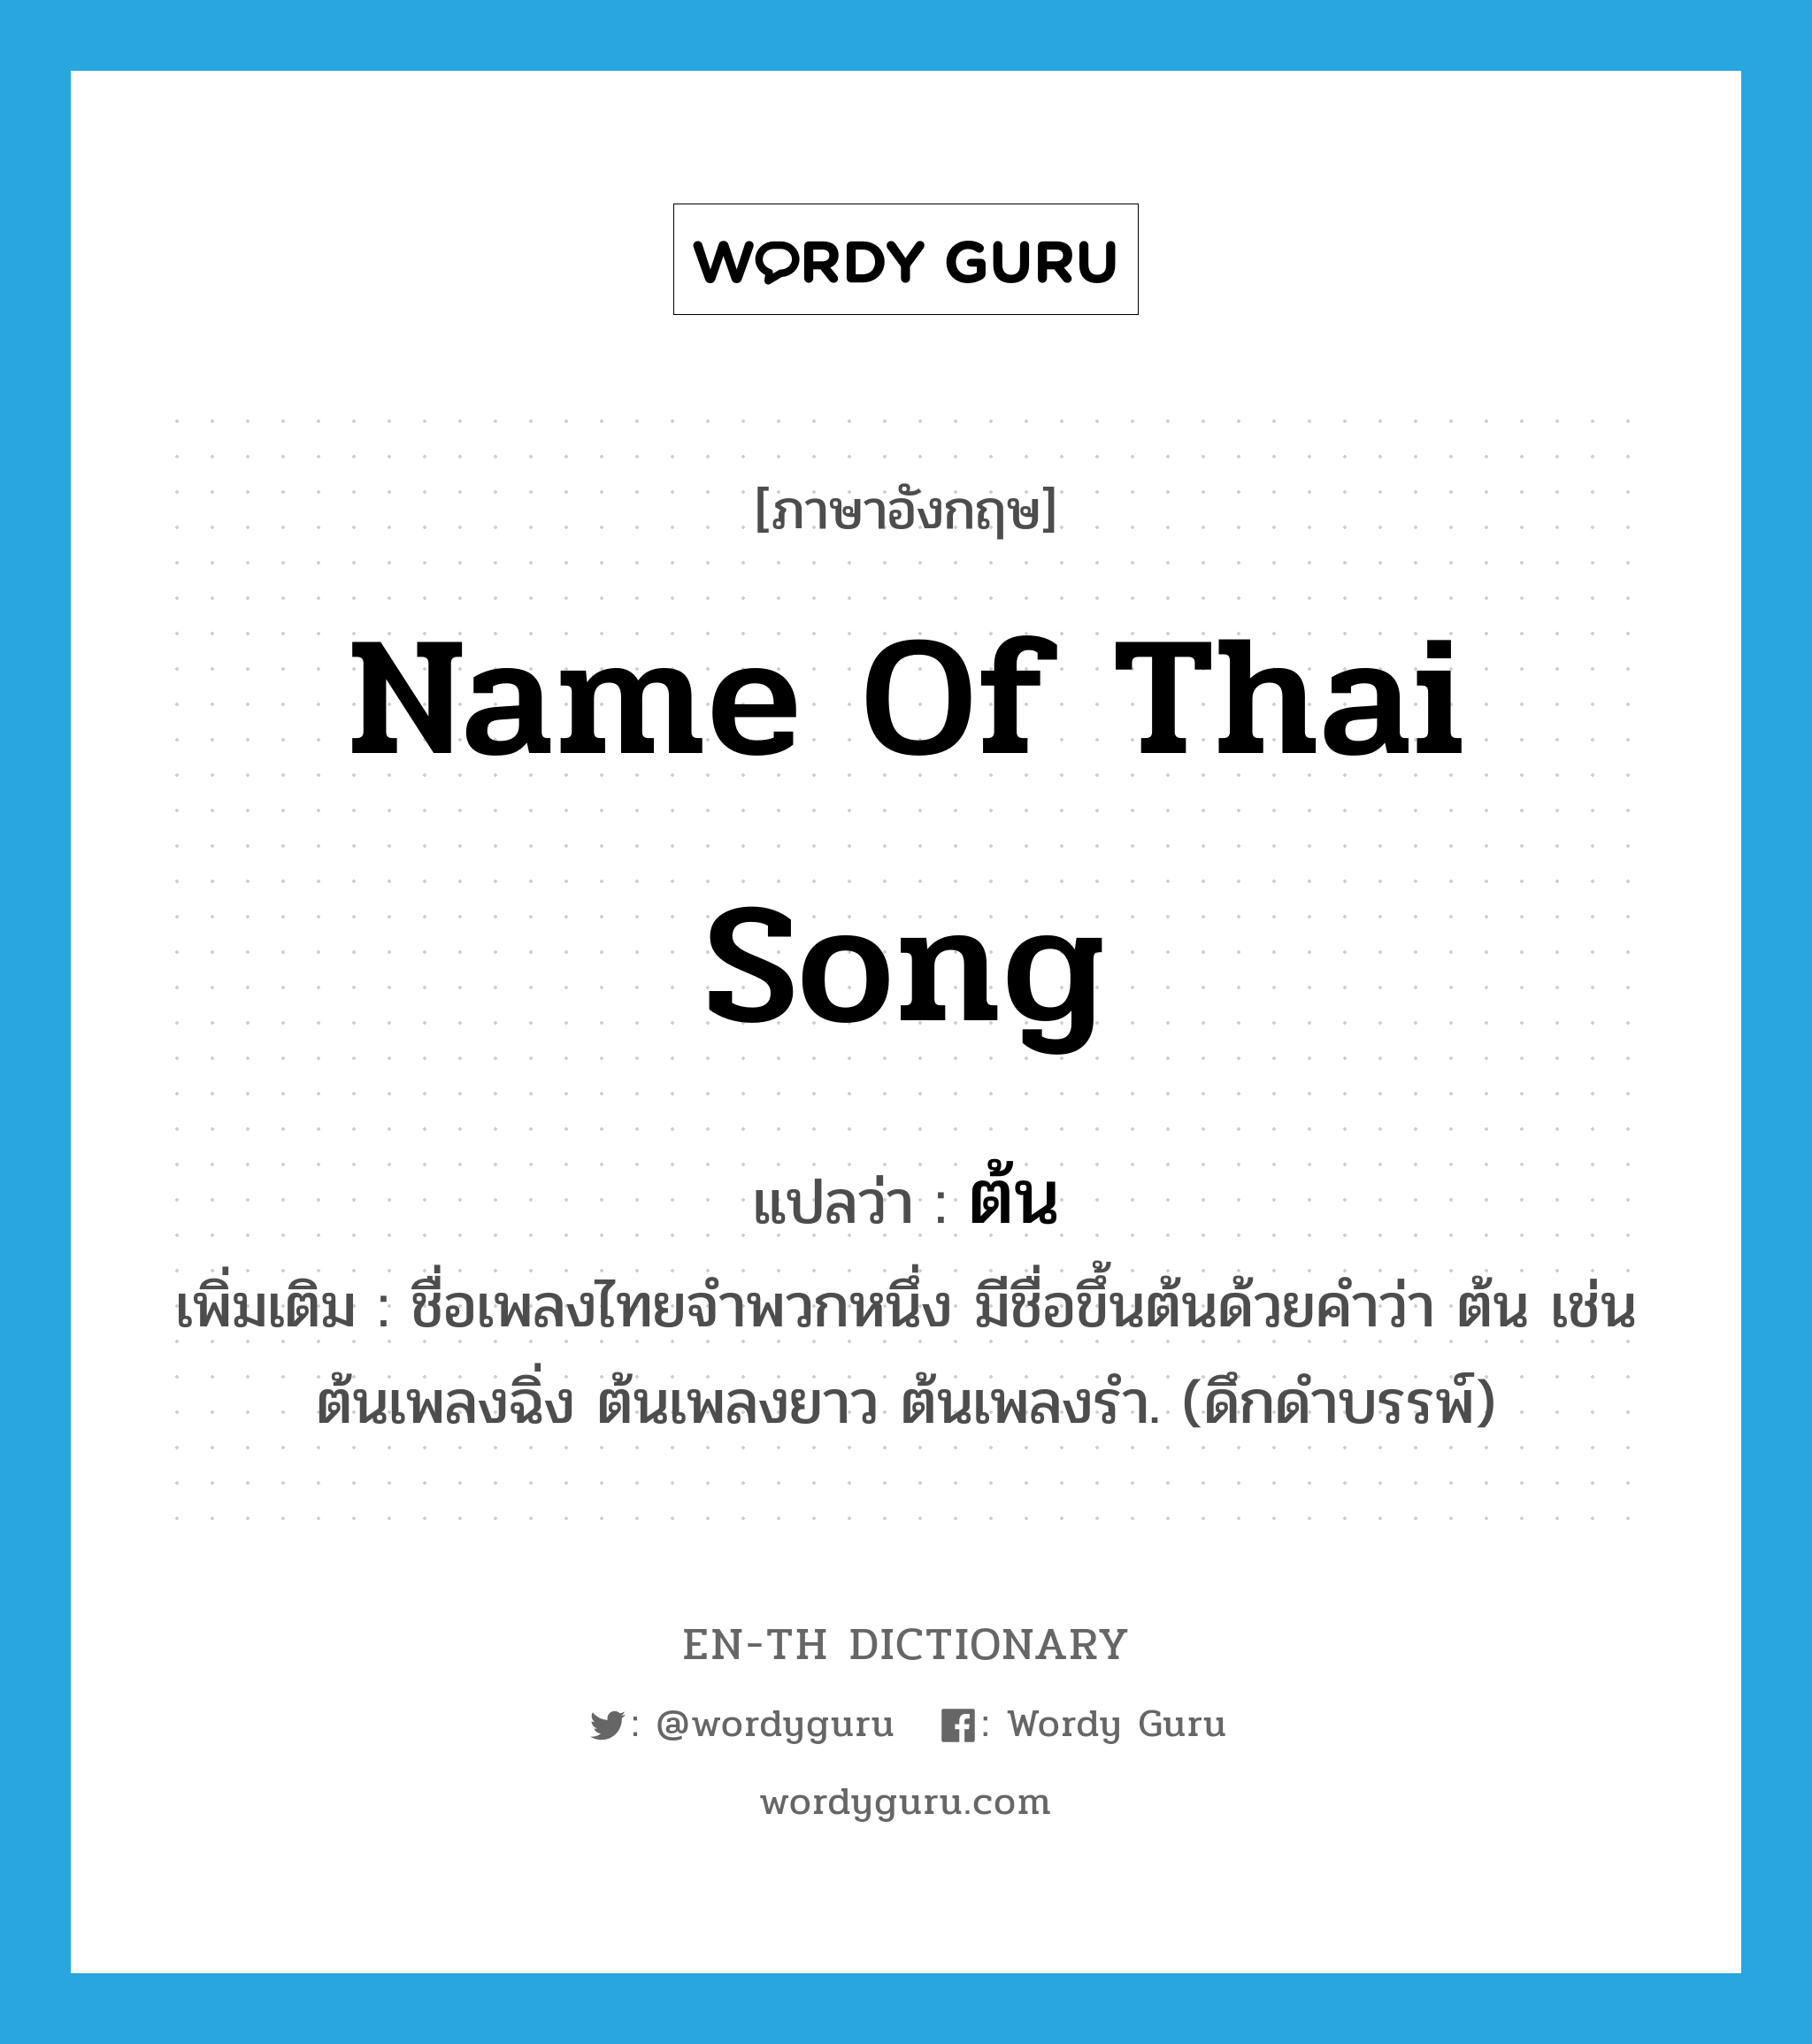 name of Thai song แปลว่า?, คำศัพท์ภาษาอังกฤษ name of Thai song แปลว่า ต้น ประเภท N เพิ่มเติม ชื่อเพลงไทยจำพวกหนึ่ง มีชื่อขึ้นต้นด้วยคำว่า ต้น เช่น ต้นเพลงฉิ่ง ต้นเพลงยาว ต้นเพลงรำ. (ดึกดำบรรพ์) หมวด N